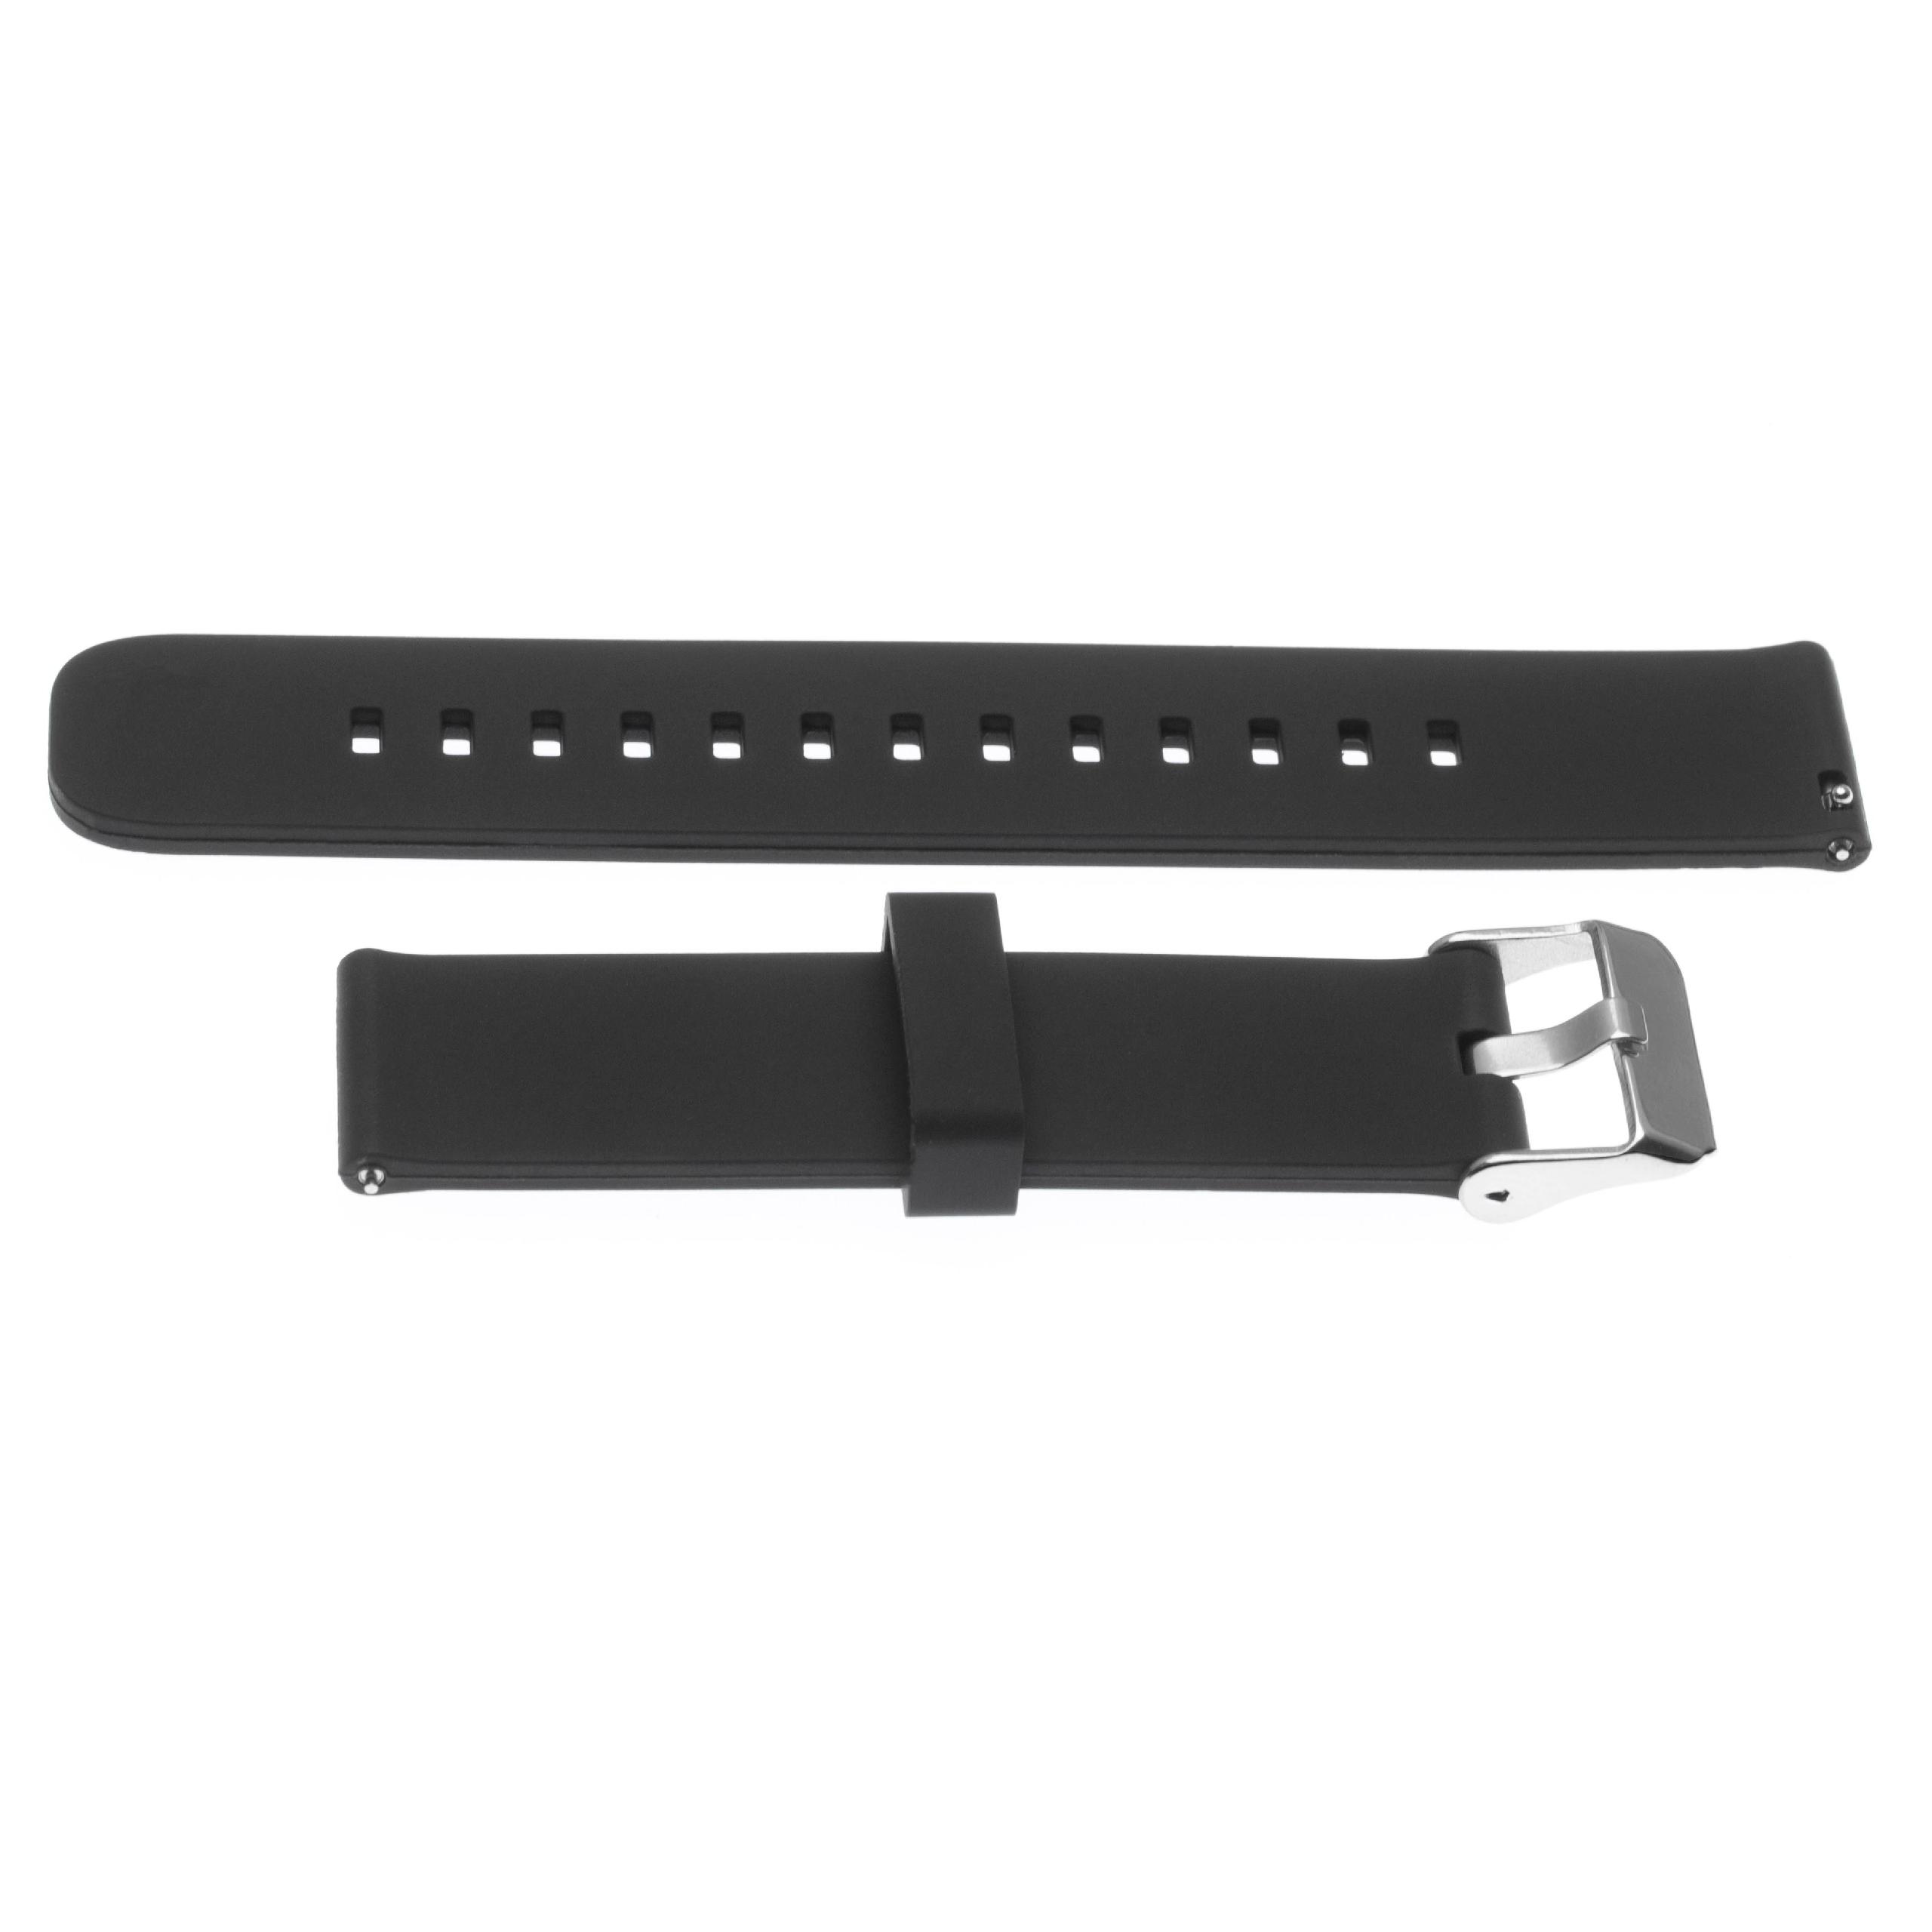 Bracelet L de remplacement pour montre intelligente Huawei Watch - 12,2cm + 8,5 cm de long, 20mm de large, sil